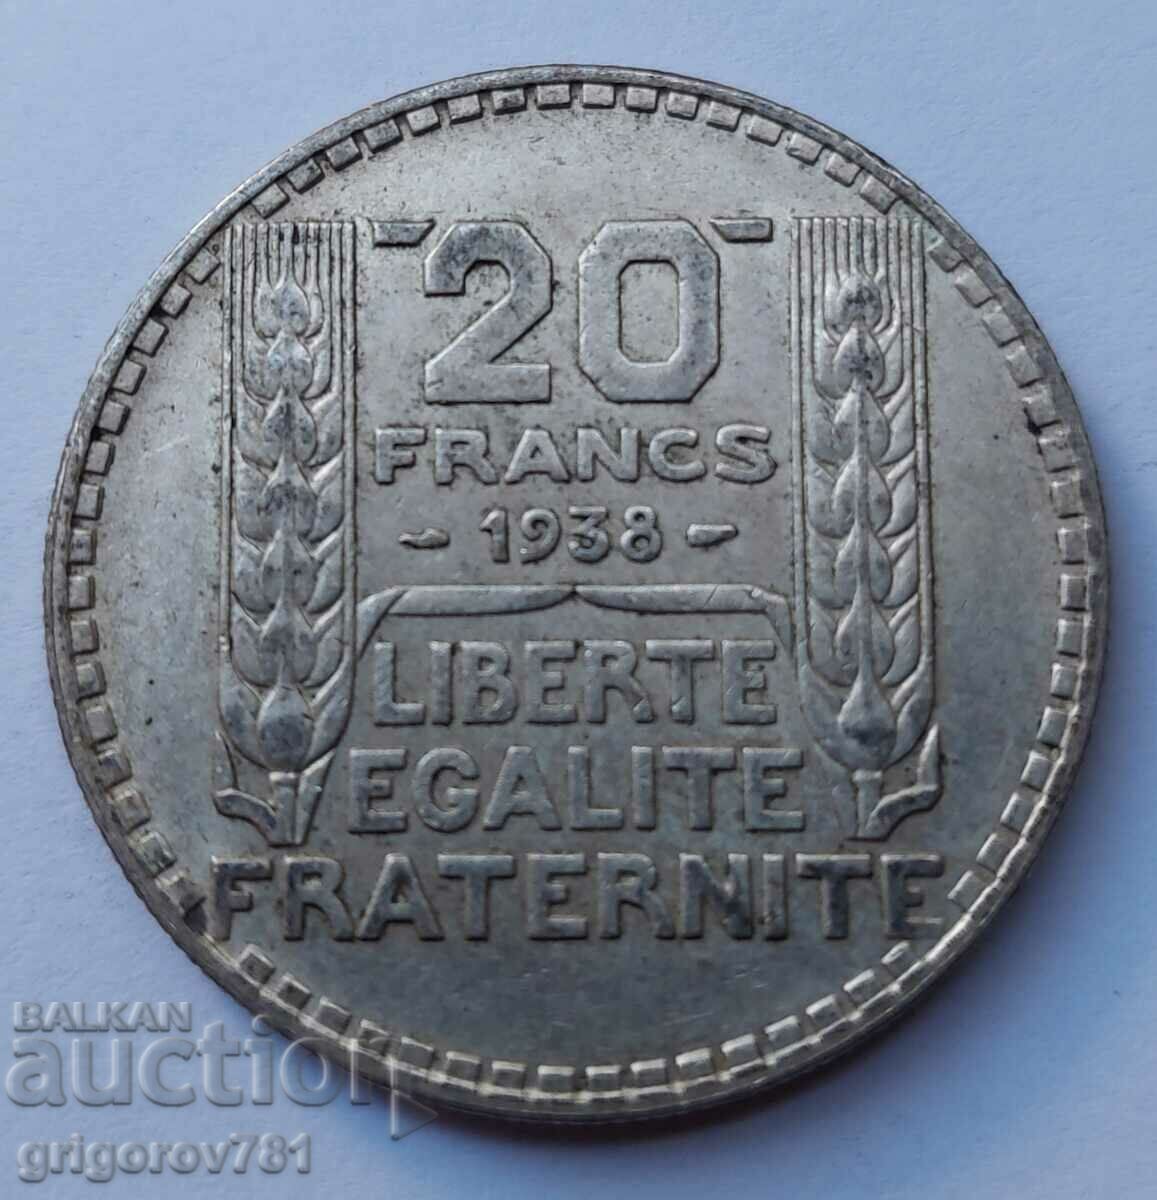 20 Franci Argint Franta 1938 - Moneda de argint #40